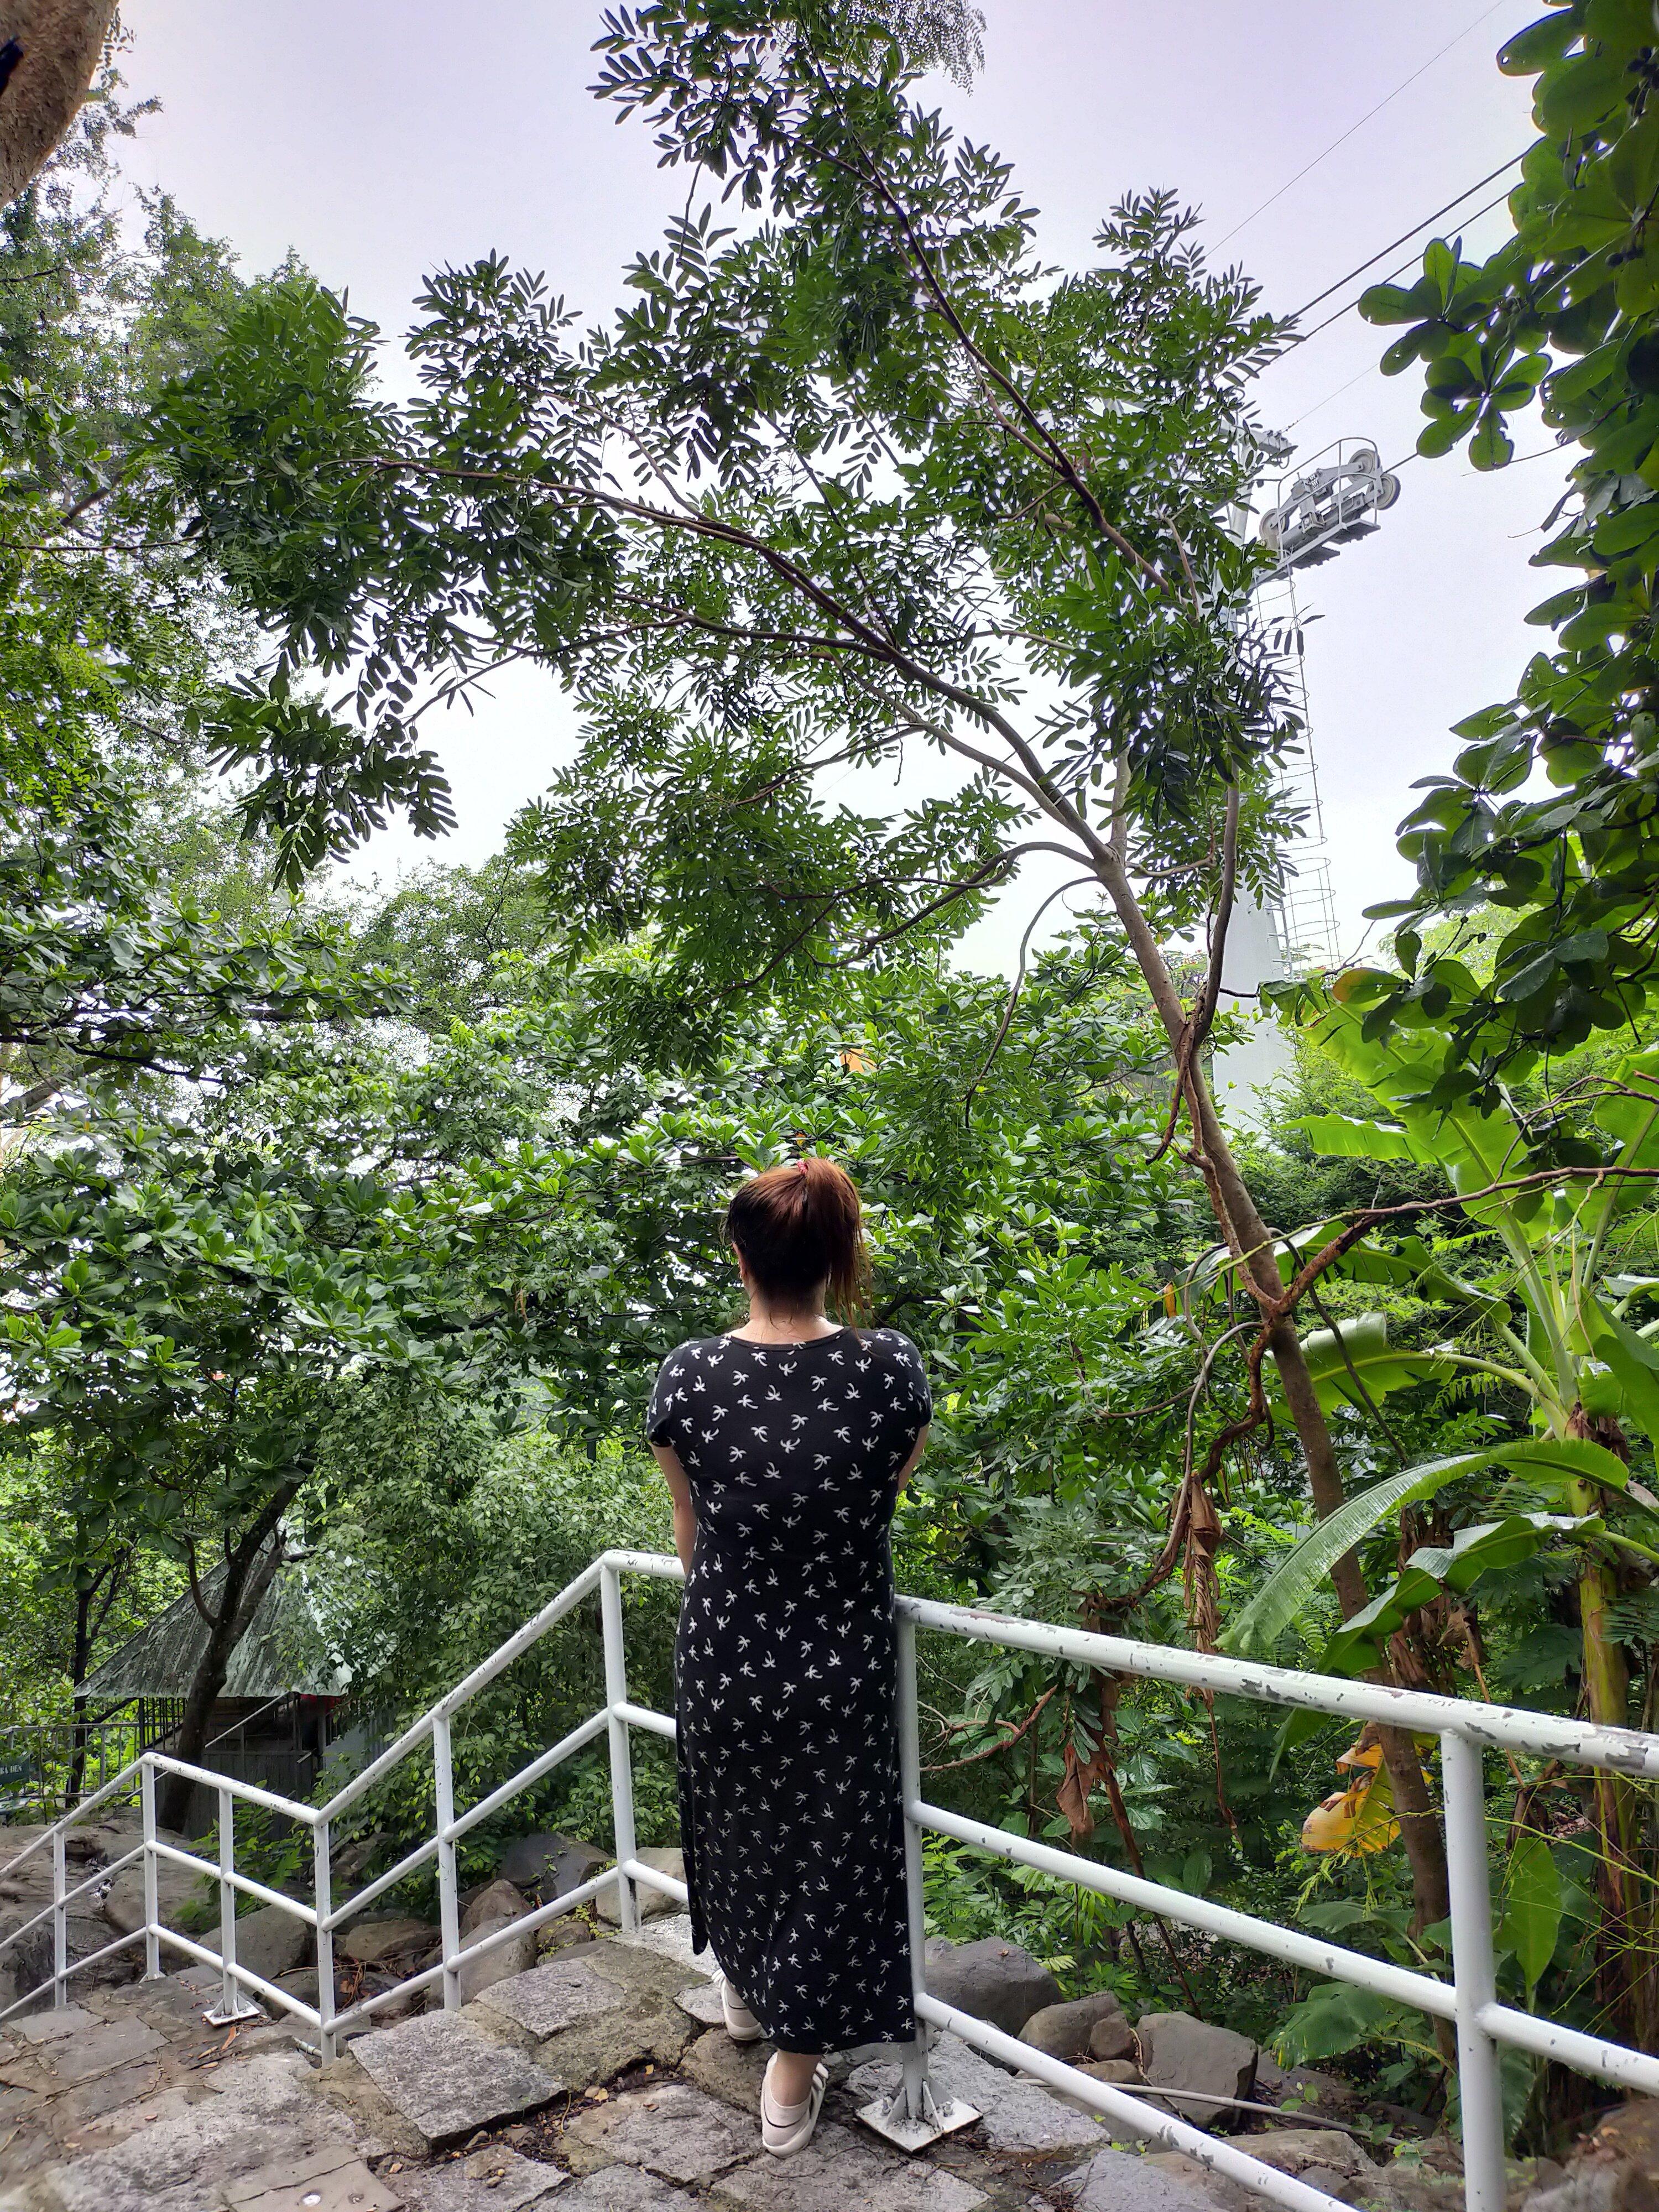 Cảnh thiên nhiên dọc đường lên Chùa Bà thật thơ mộng (ảnh: Đỗ Khánh Ngọc)